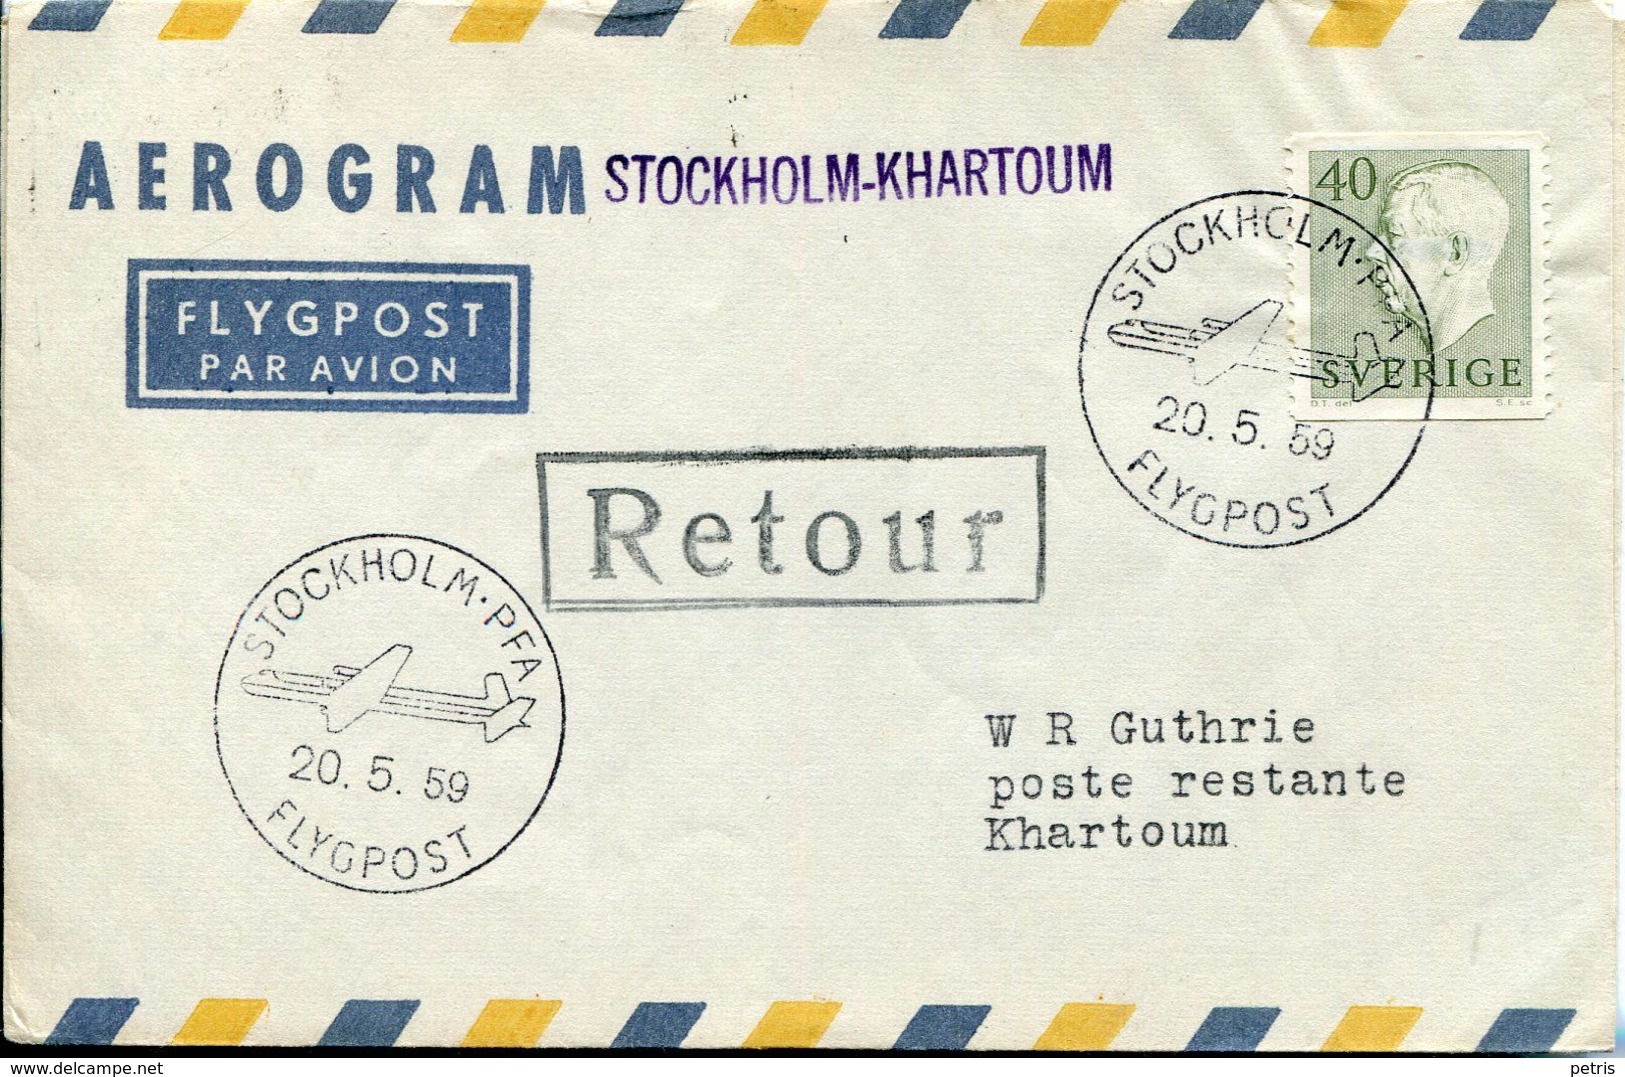 Sverige 1959 Aerogram  First Flight Jet Flygpost - Lot. 506 - Variedades Y Curiosidades